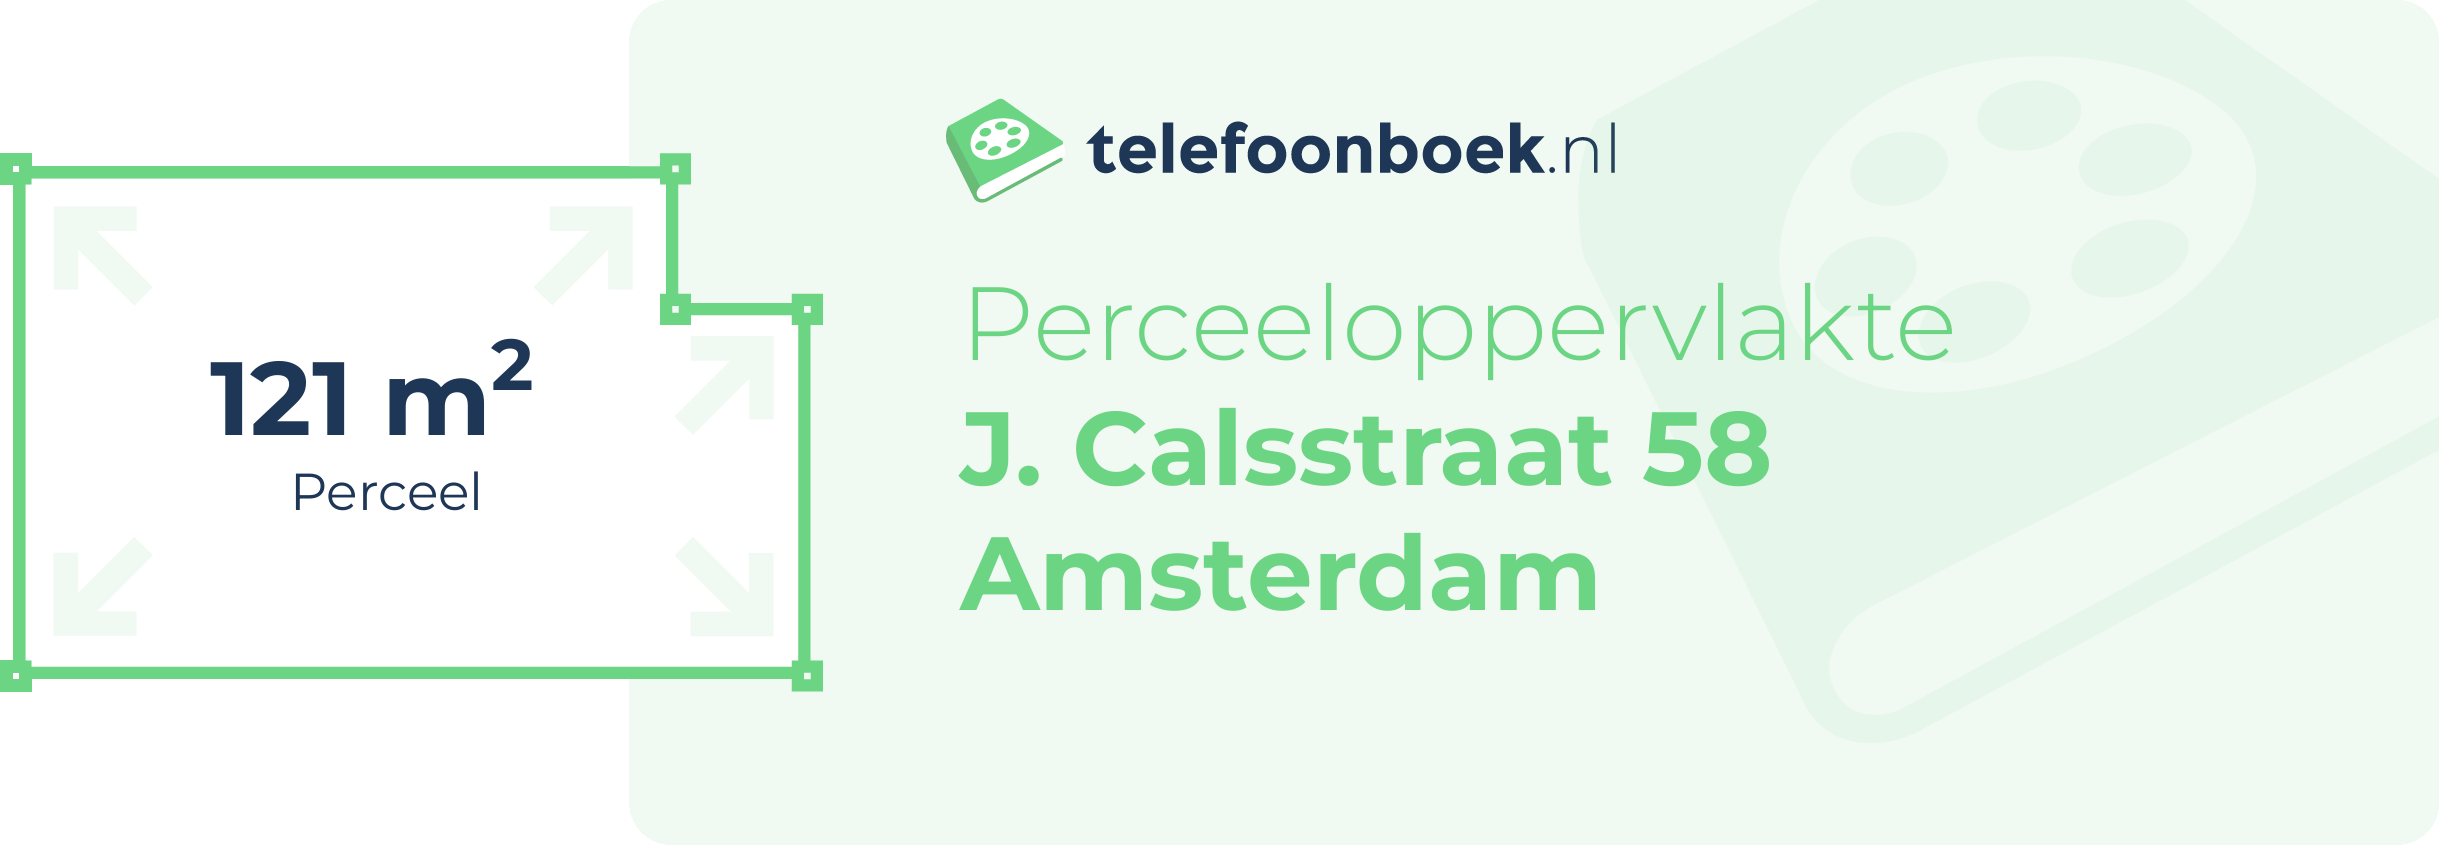 Perceeloppervlakte J. Calsstraat 58 Amsterdam